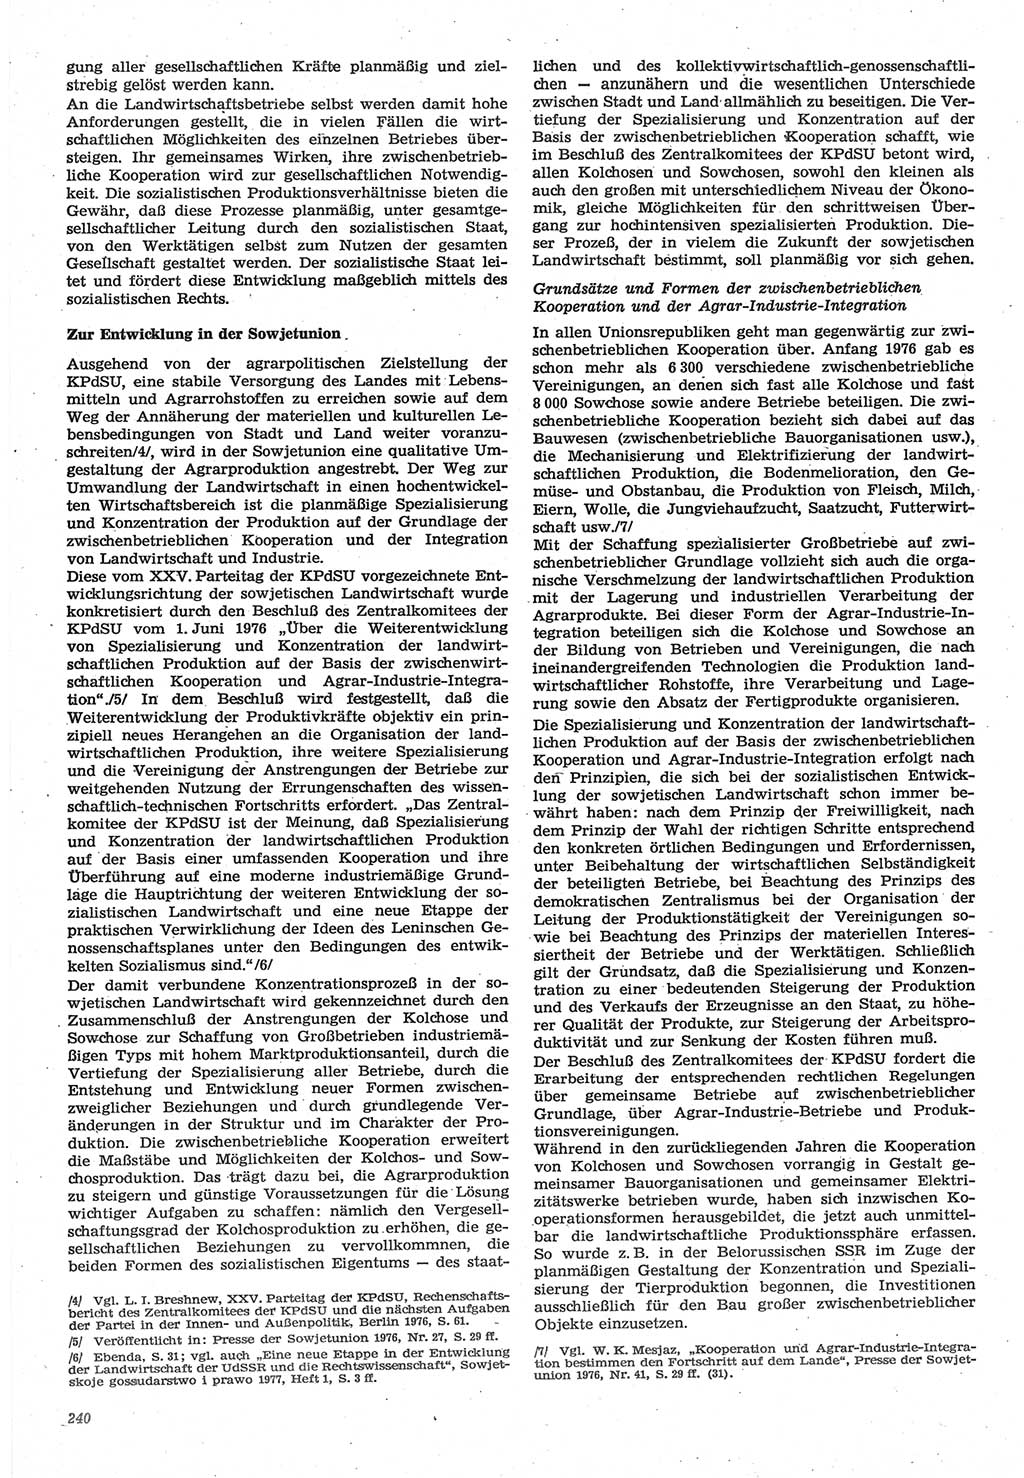 Neue Justiz (NJ), Zeitschrift für Recht und Rechtswissenschaft-Zeitschrift, sozialistisches Recht und Gesetzlichkeit, 31. Jahrgang 1977, Seite 240 (NJ DDR 1977, S. 240)